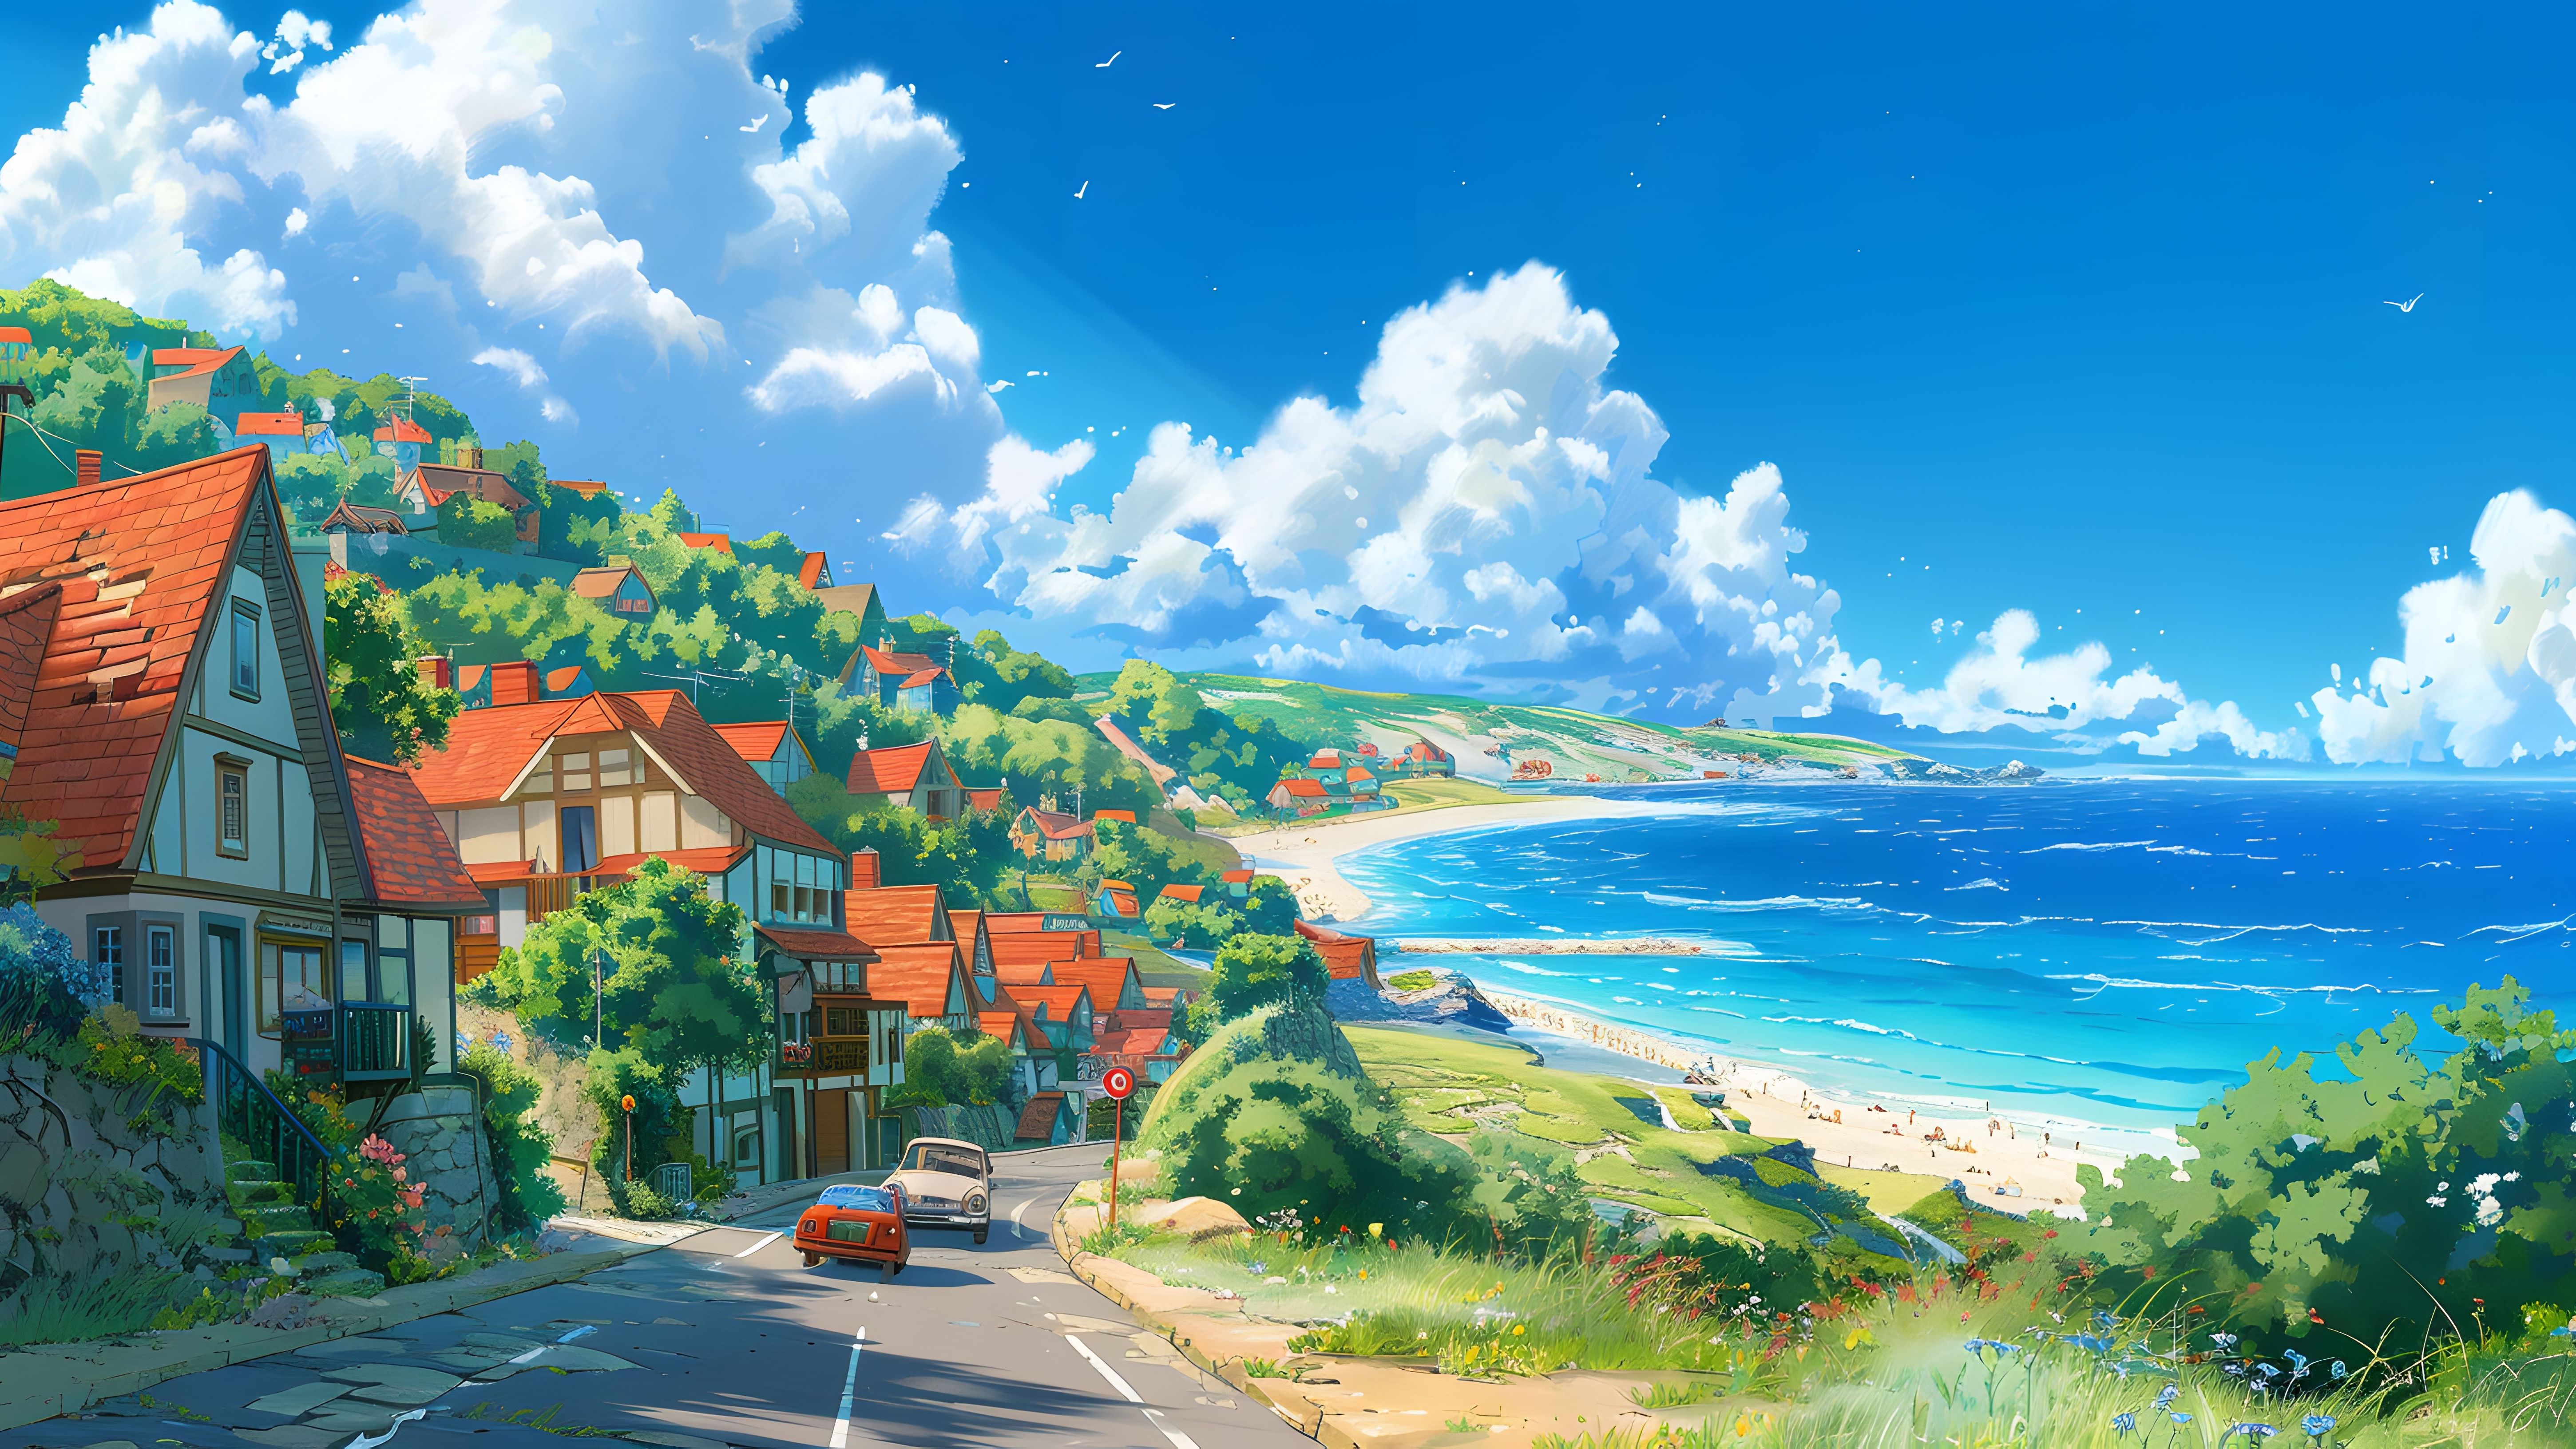 【4k壁纸】夏天的海边,你向往在这里生活吗?